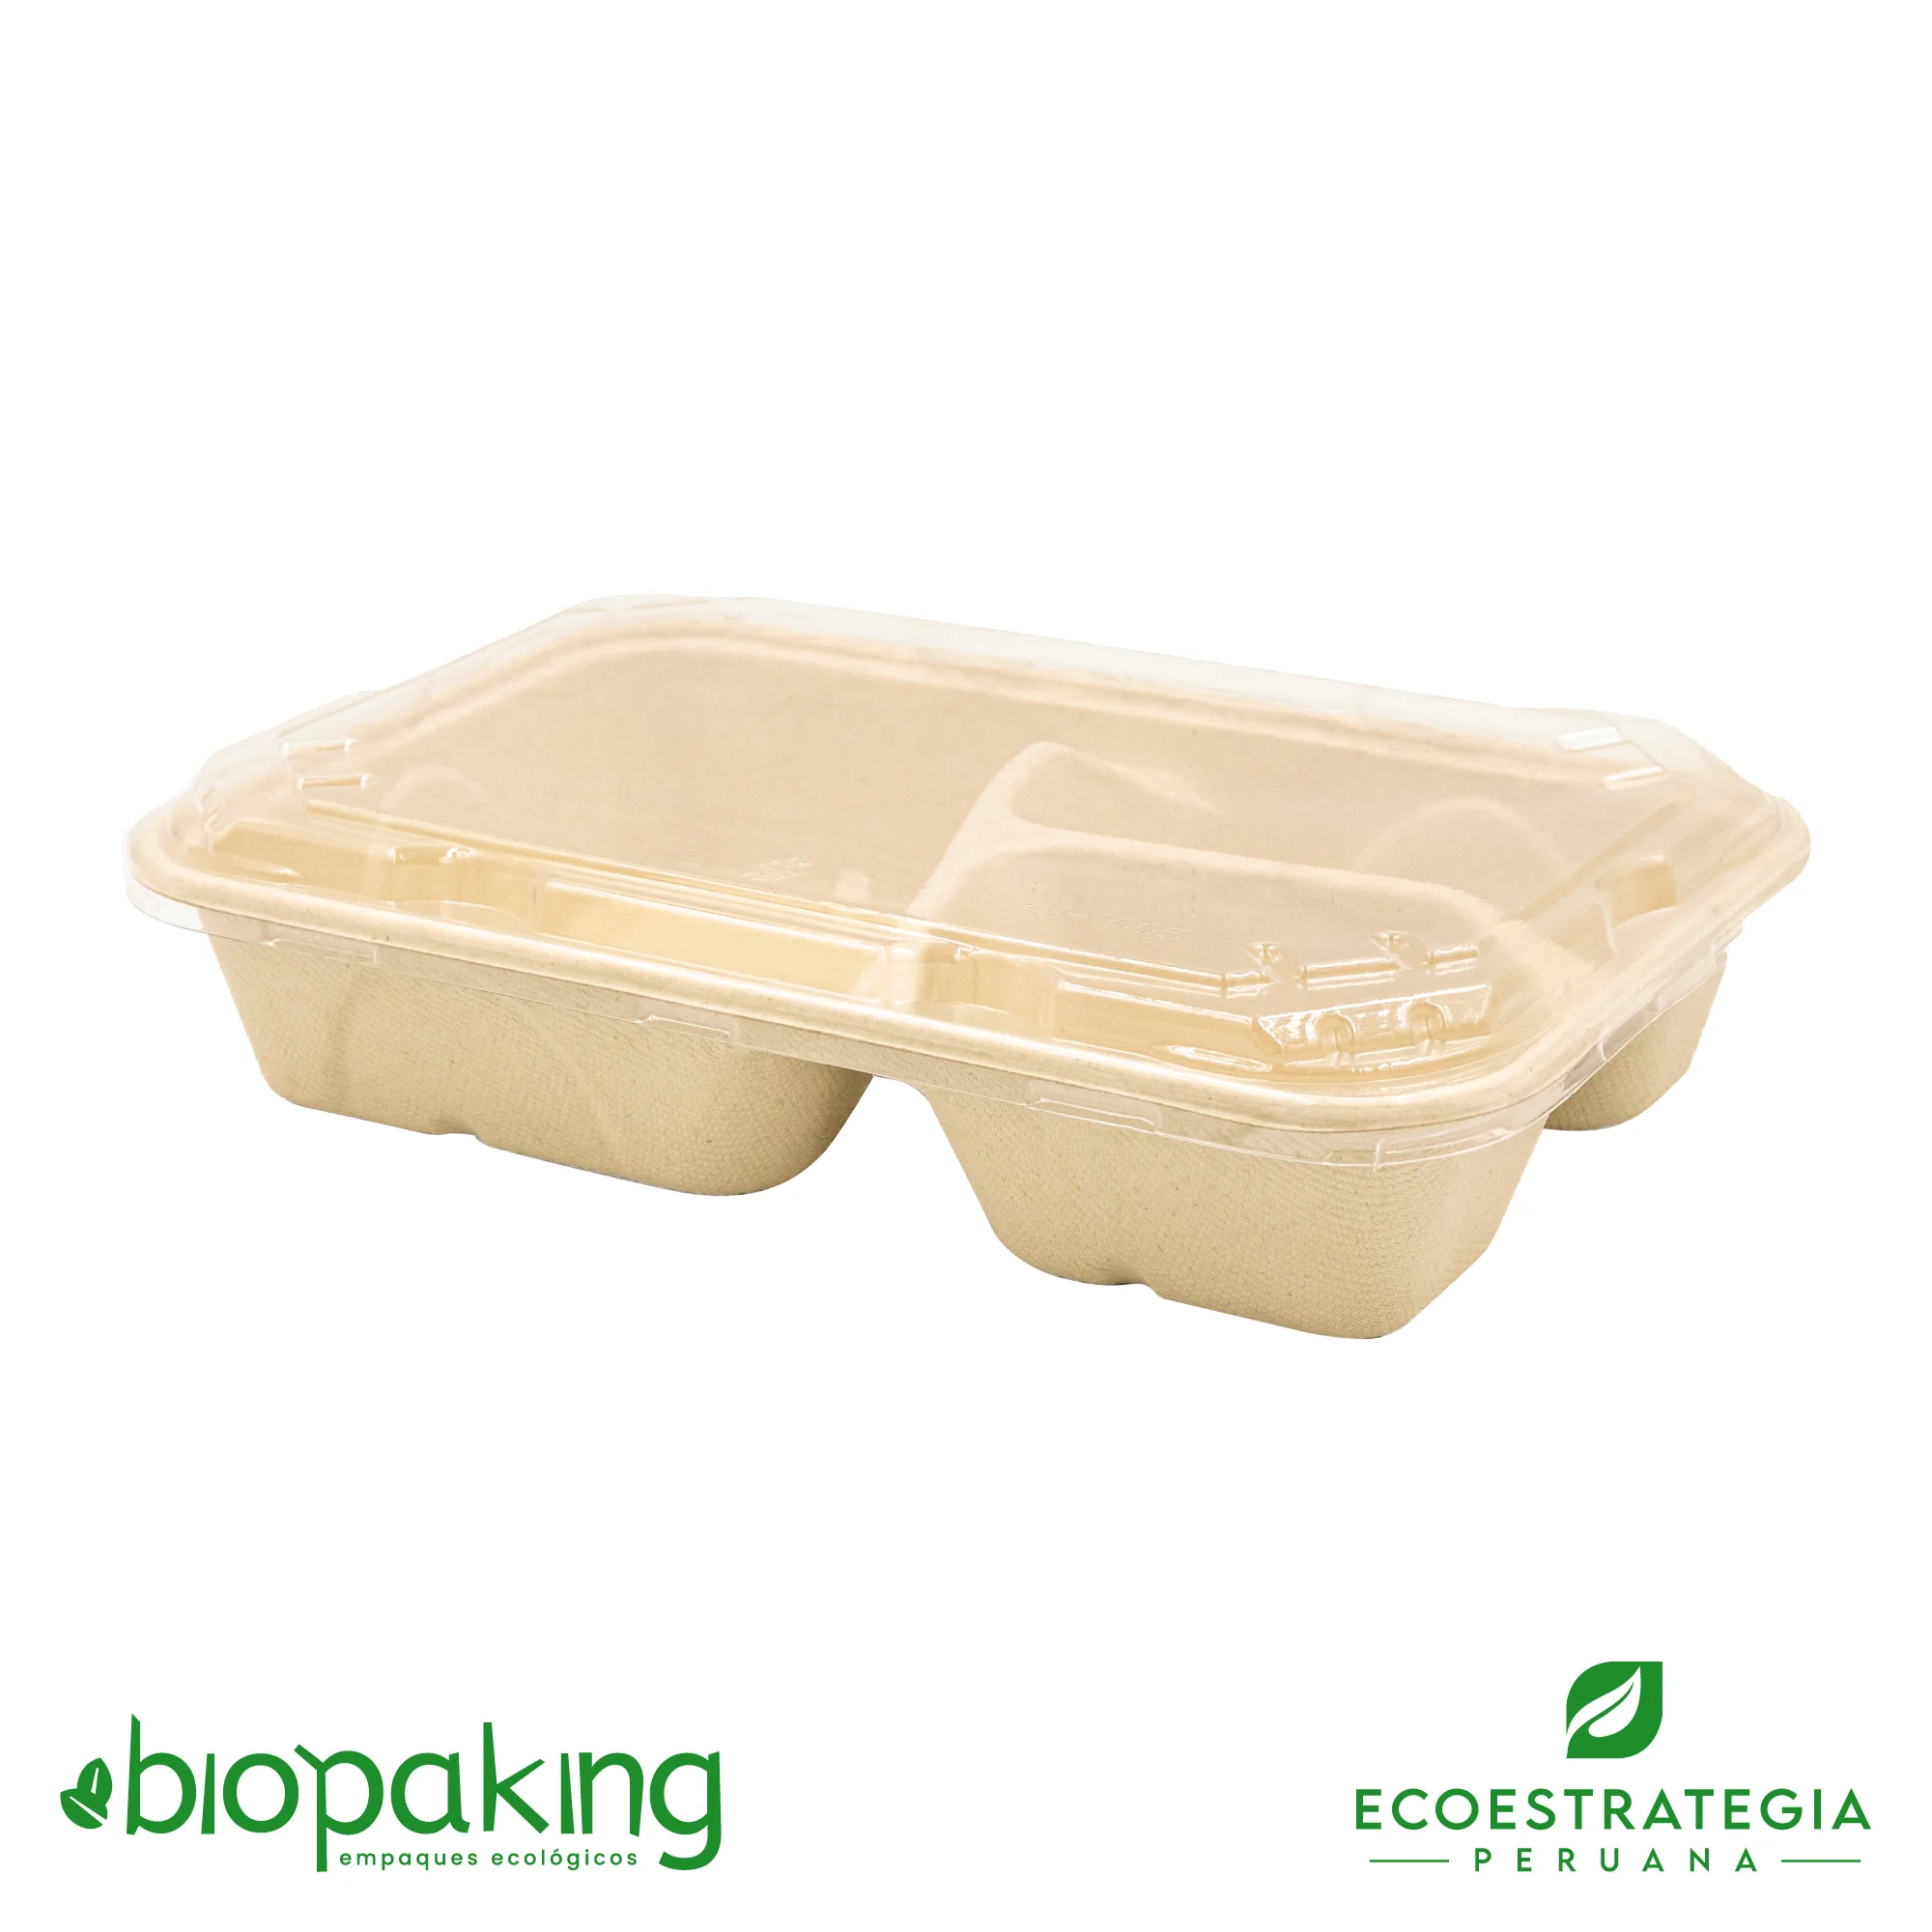 Esta bandeja biodegradable de 3 divisiones es a base de fibra de trigo. Envases descartables con gramaje ideal, cotiza tus empaques, platos y tapers ecológicos